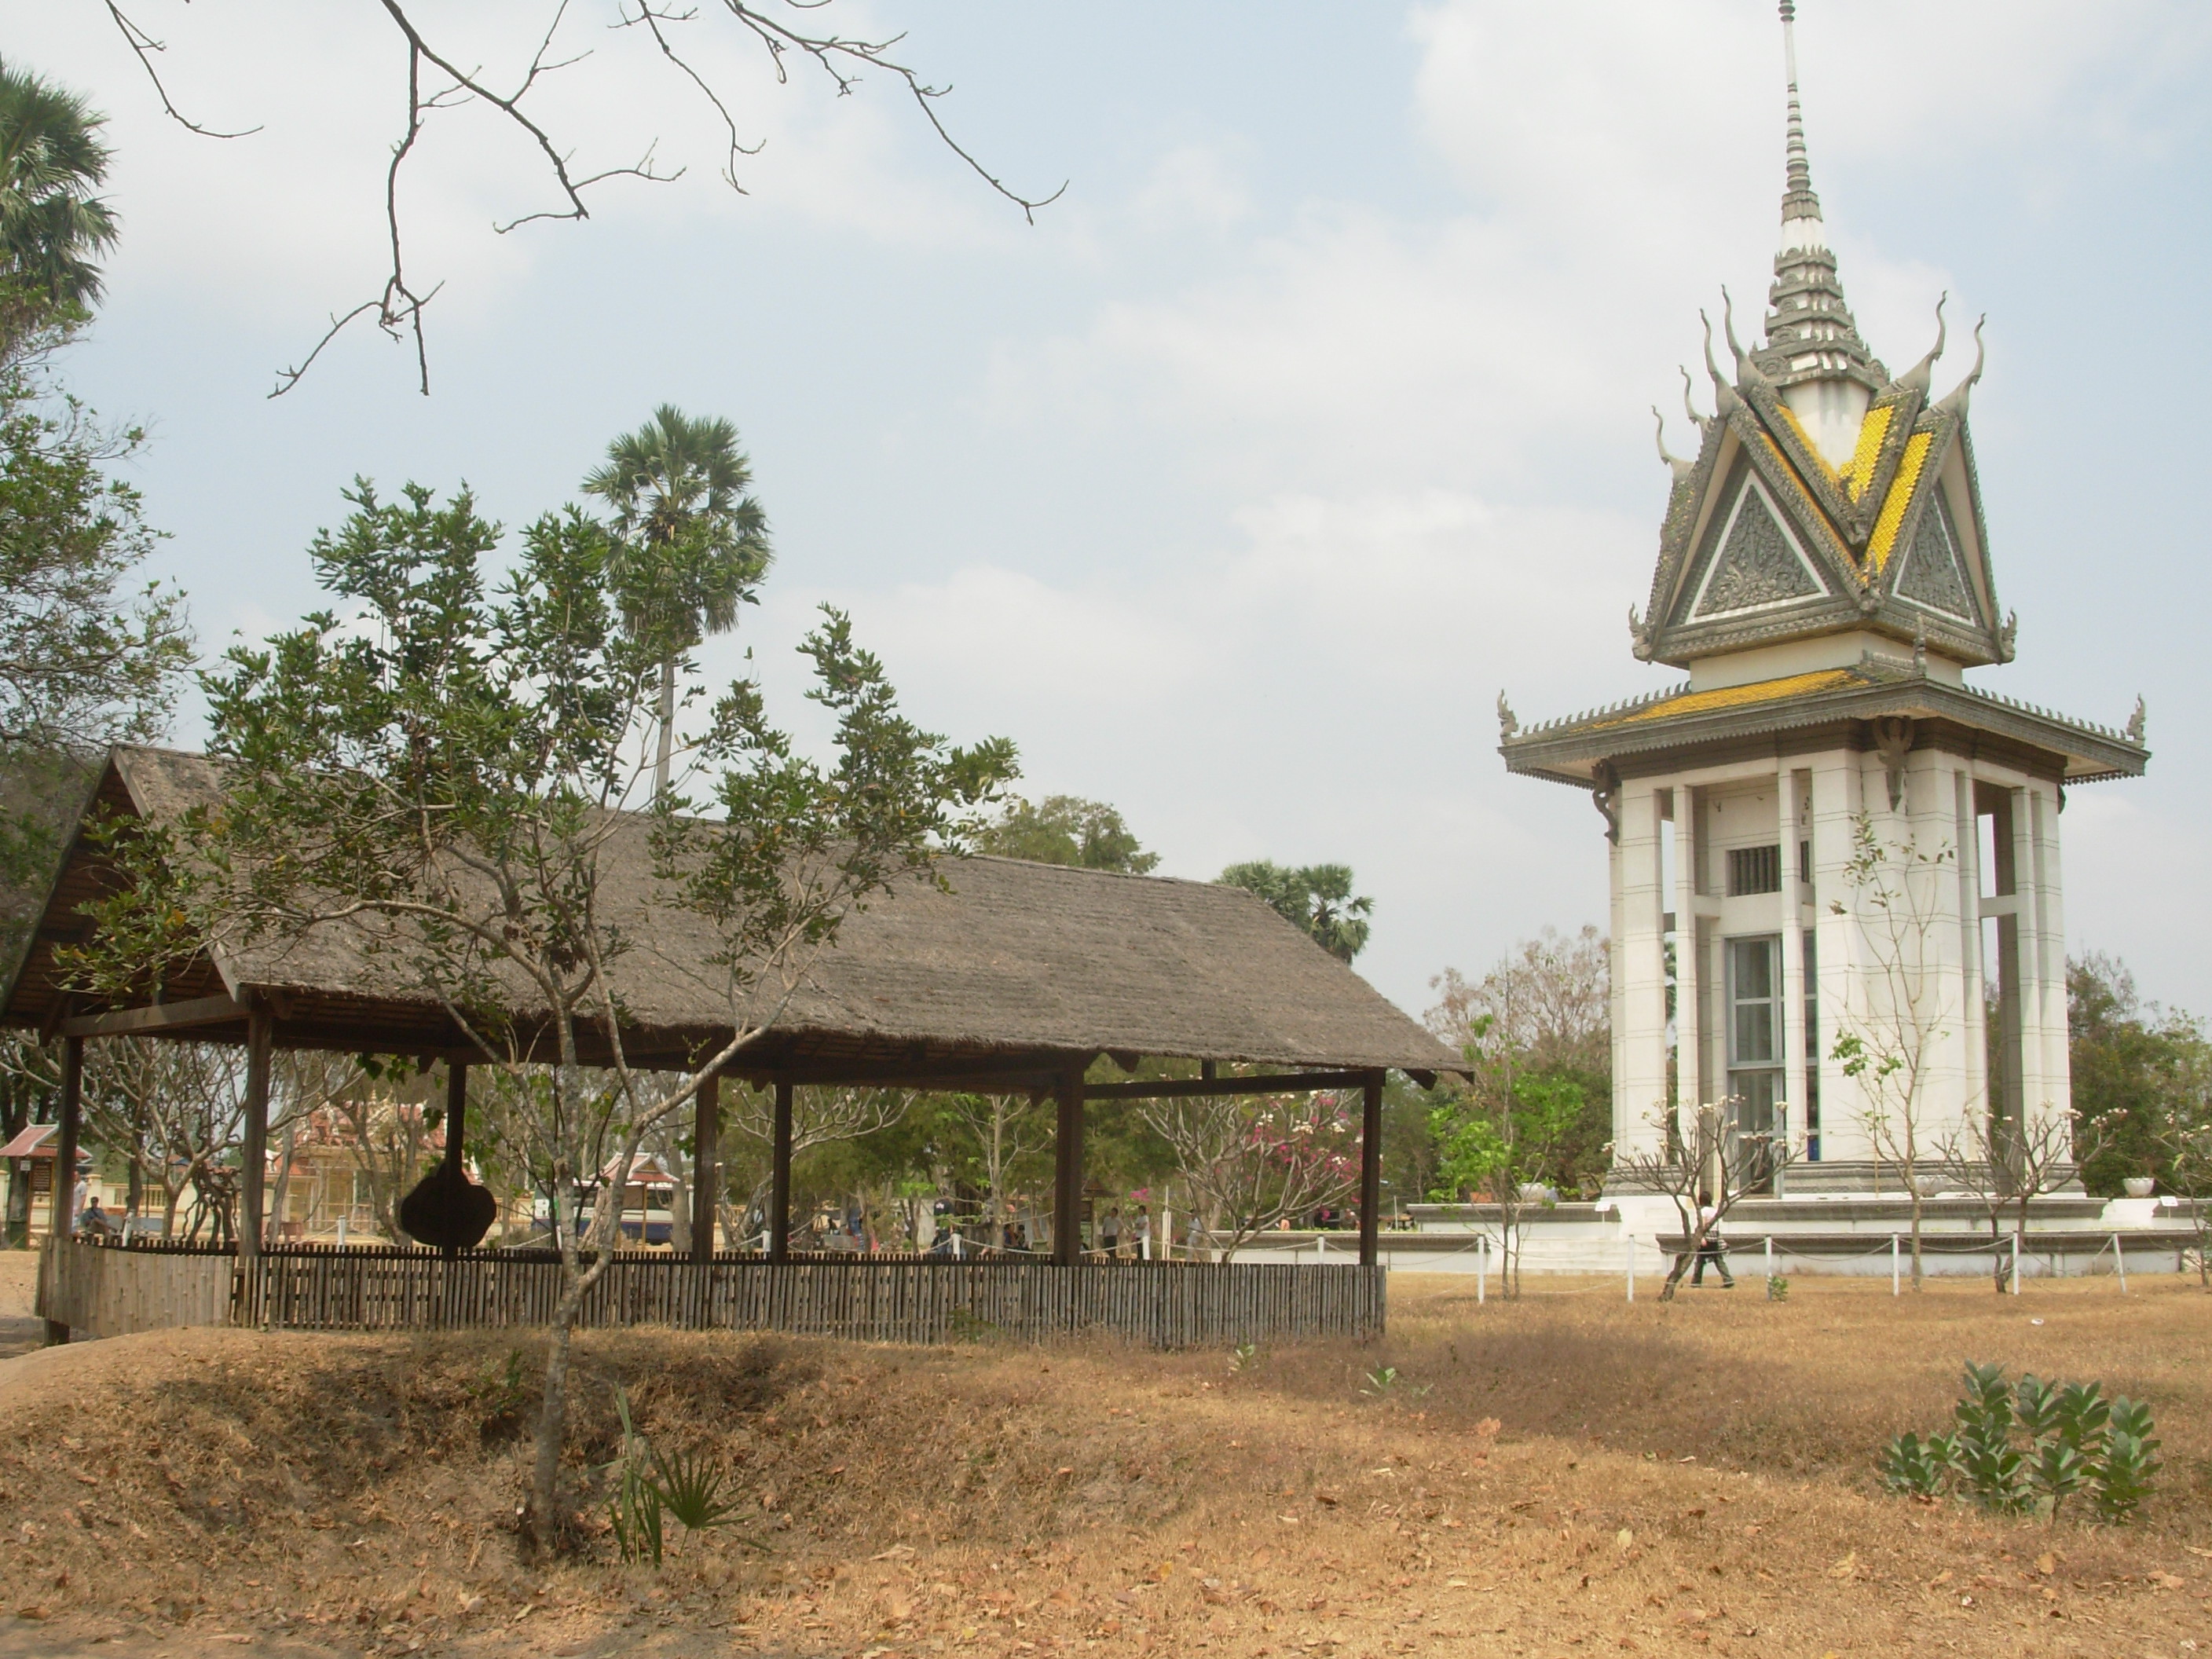 Les terribles "Killings Fields"de Choeung Ek et le stupa (à droite), qui contient les crânes de nombreuses victimes, classés selon la méthode d'exécution infligée par les Khmers rouges (cc by Jacques Beaulieu).